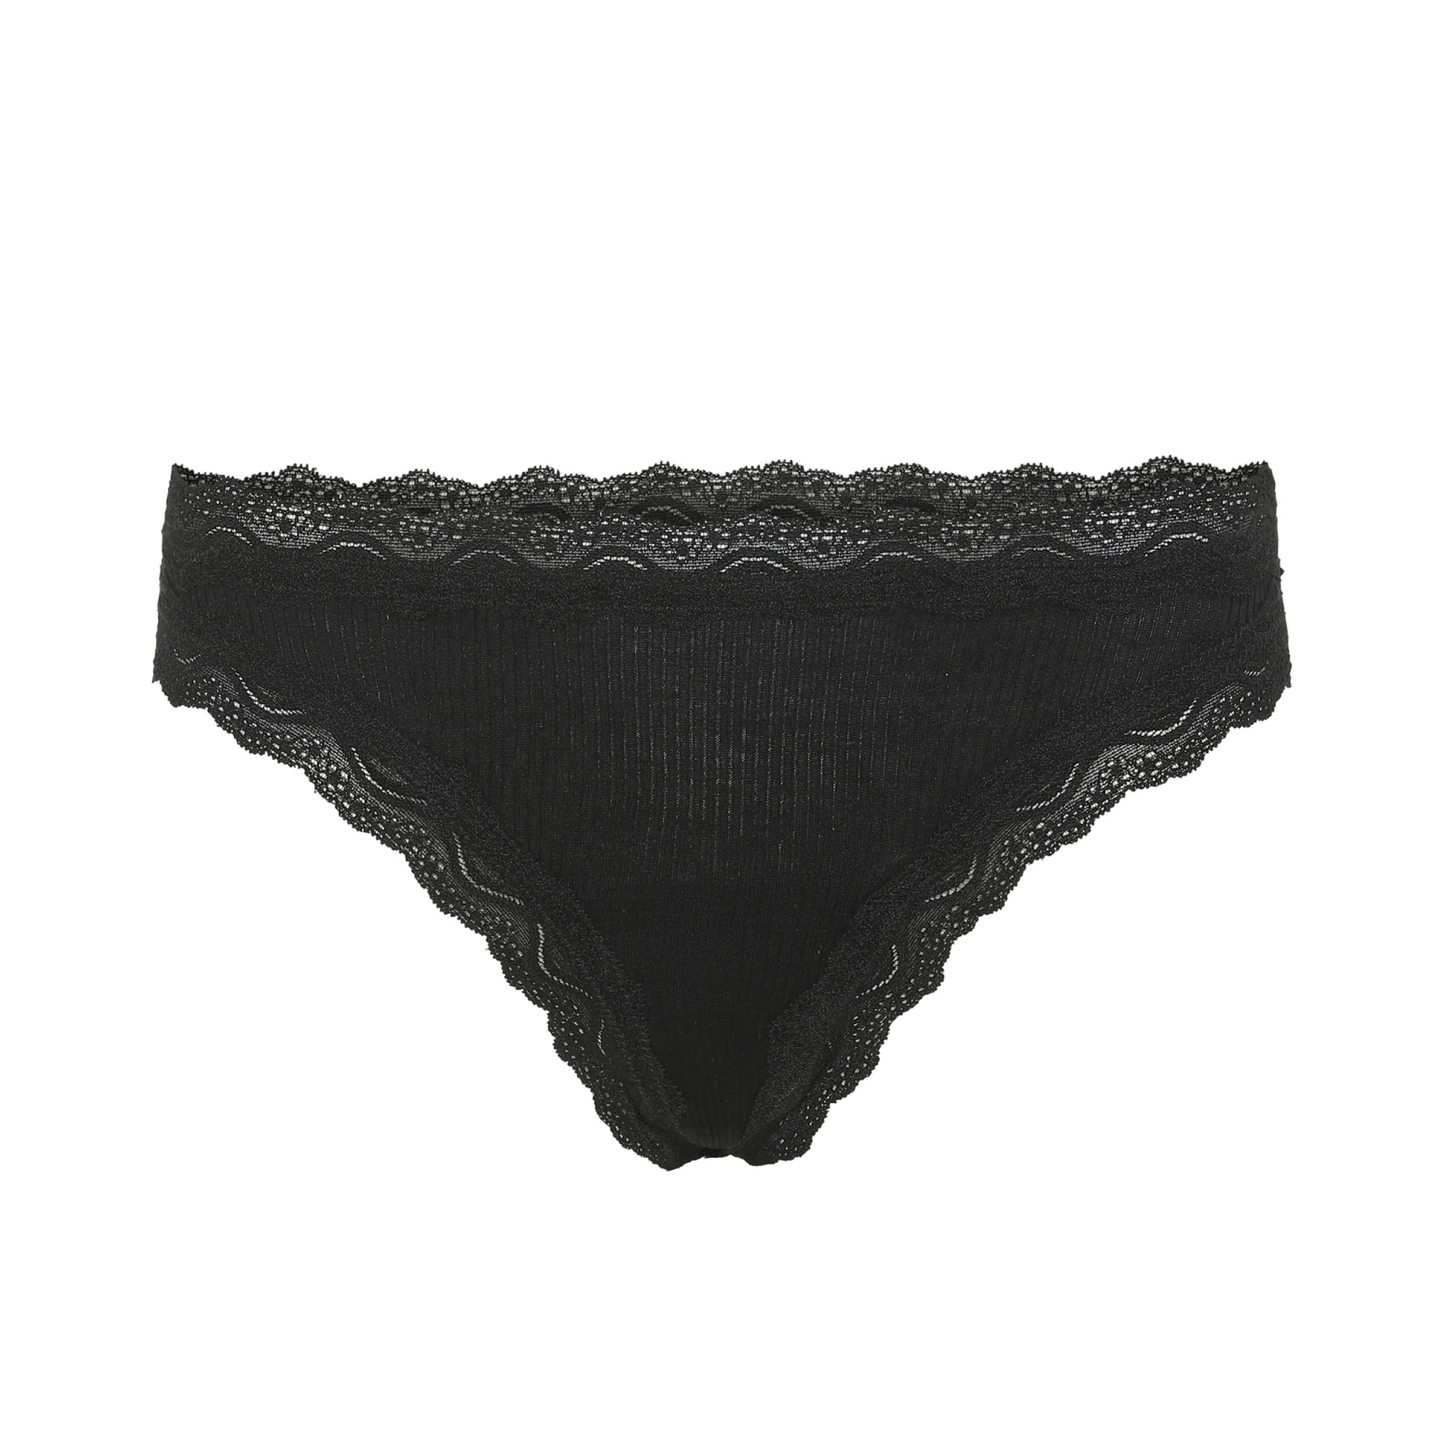 Silky Thong Panties, Black (2-Pack)